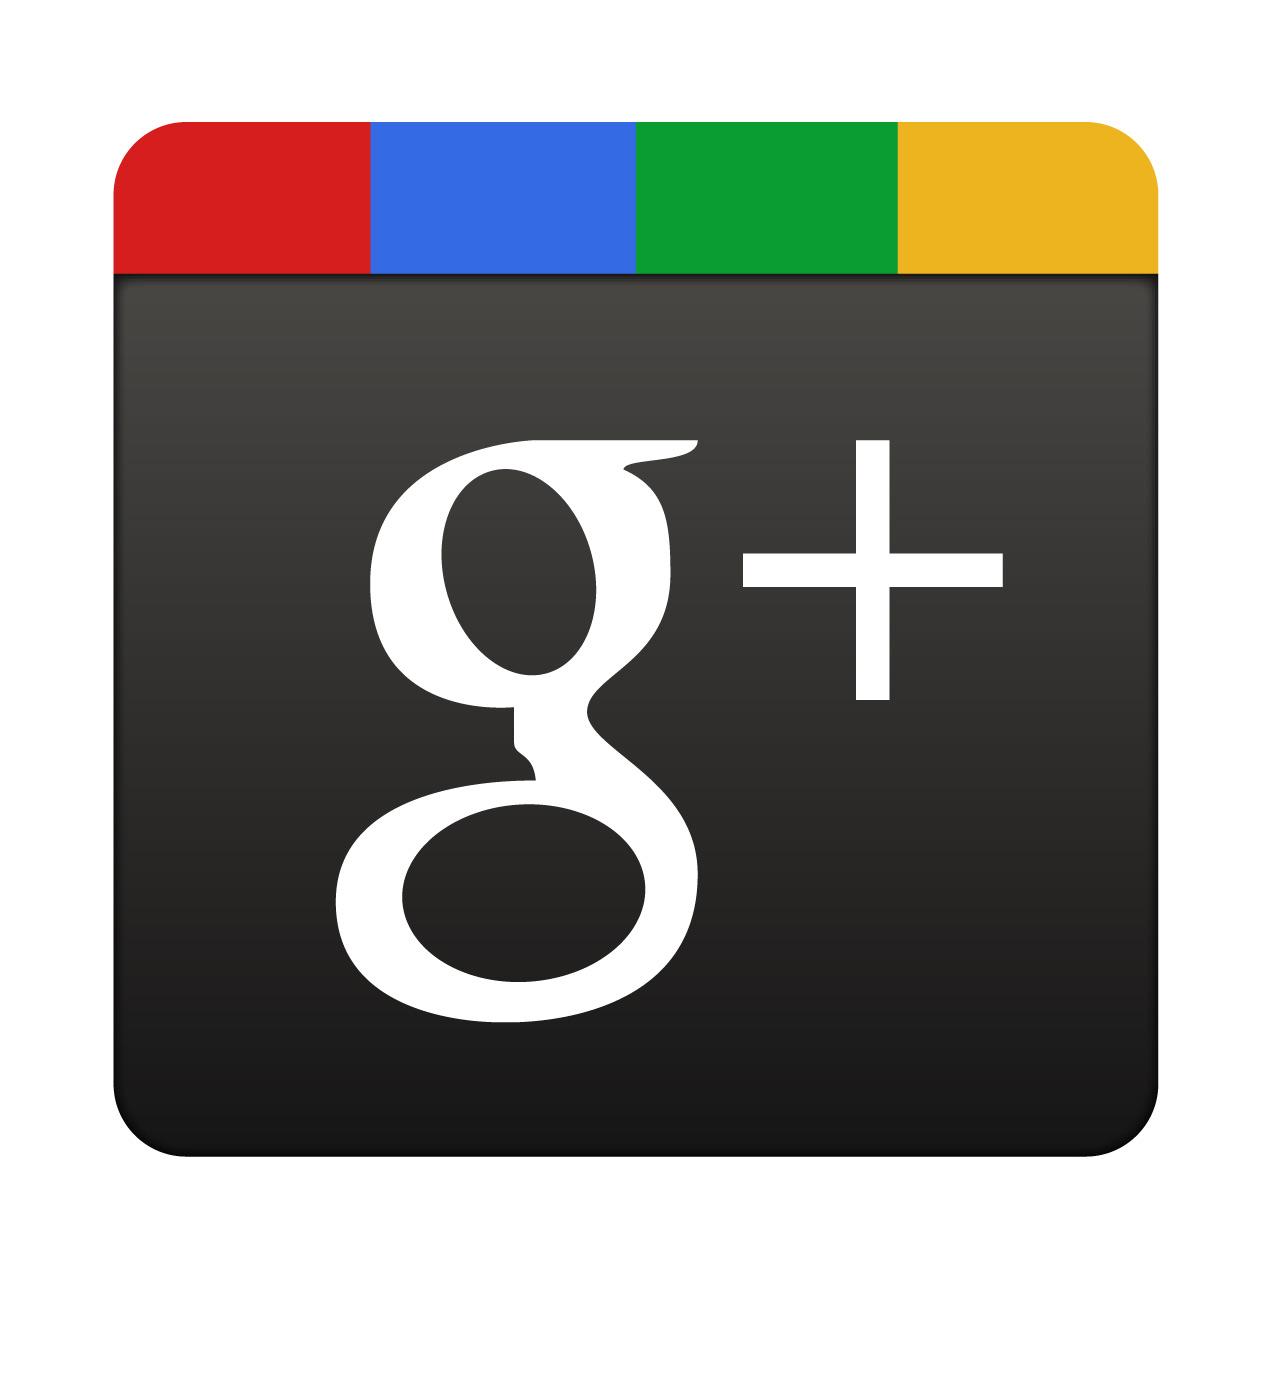 Démarrer 2012 avec Google+: vers une nouvelle répartition du temps passé sur les réseaux sociaux